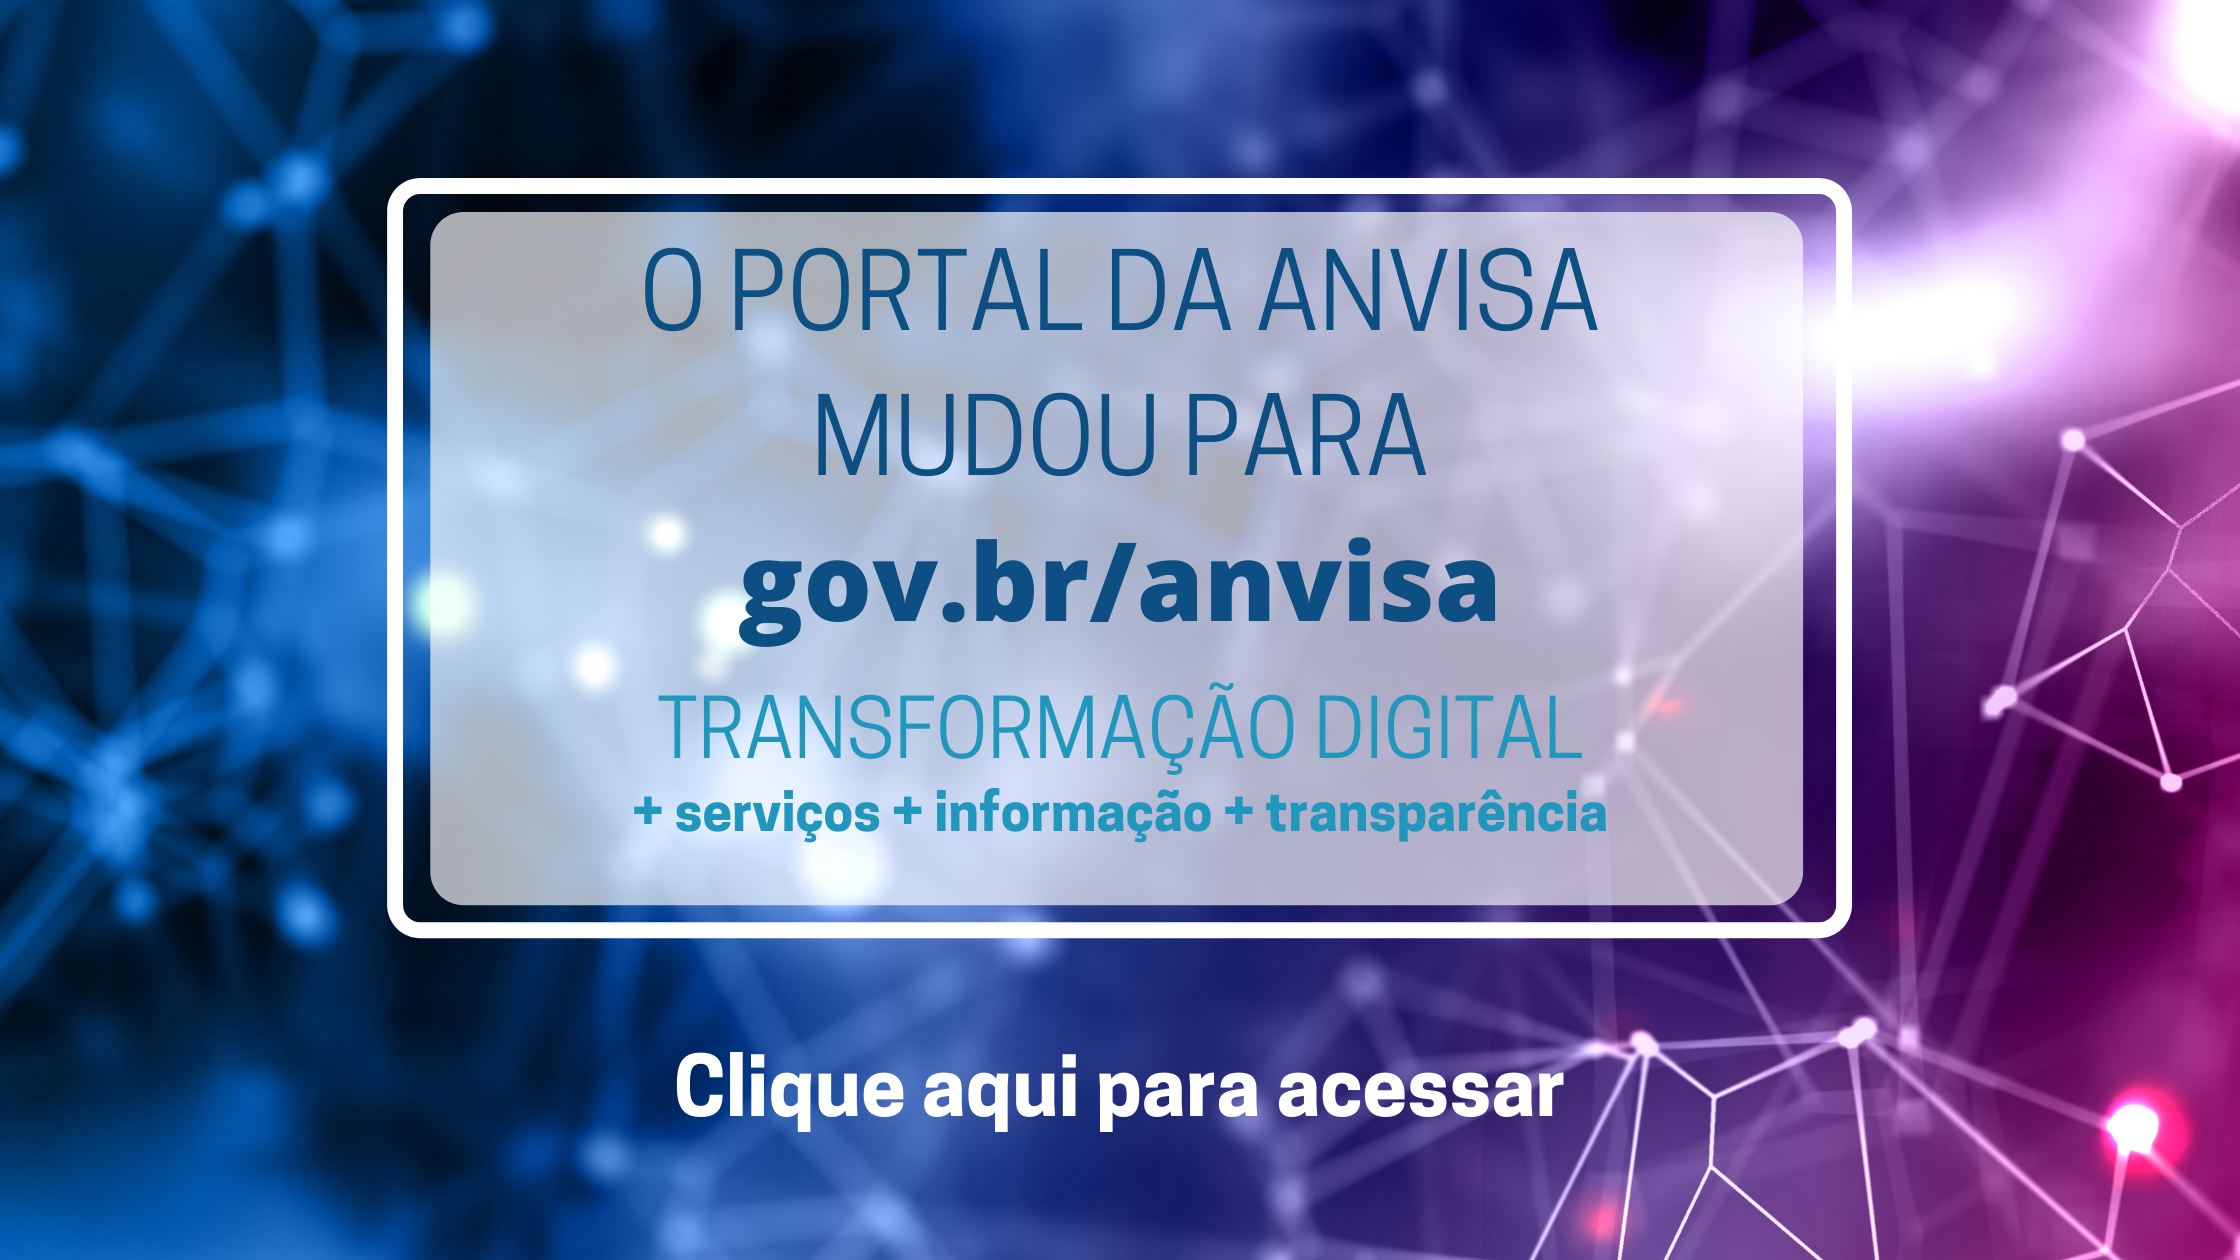 O Portal da Anvisa mudou para gov.br/anvisa. Clique aqui para acessar.